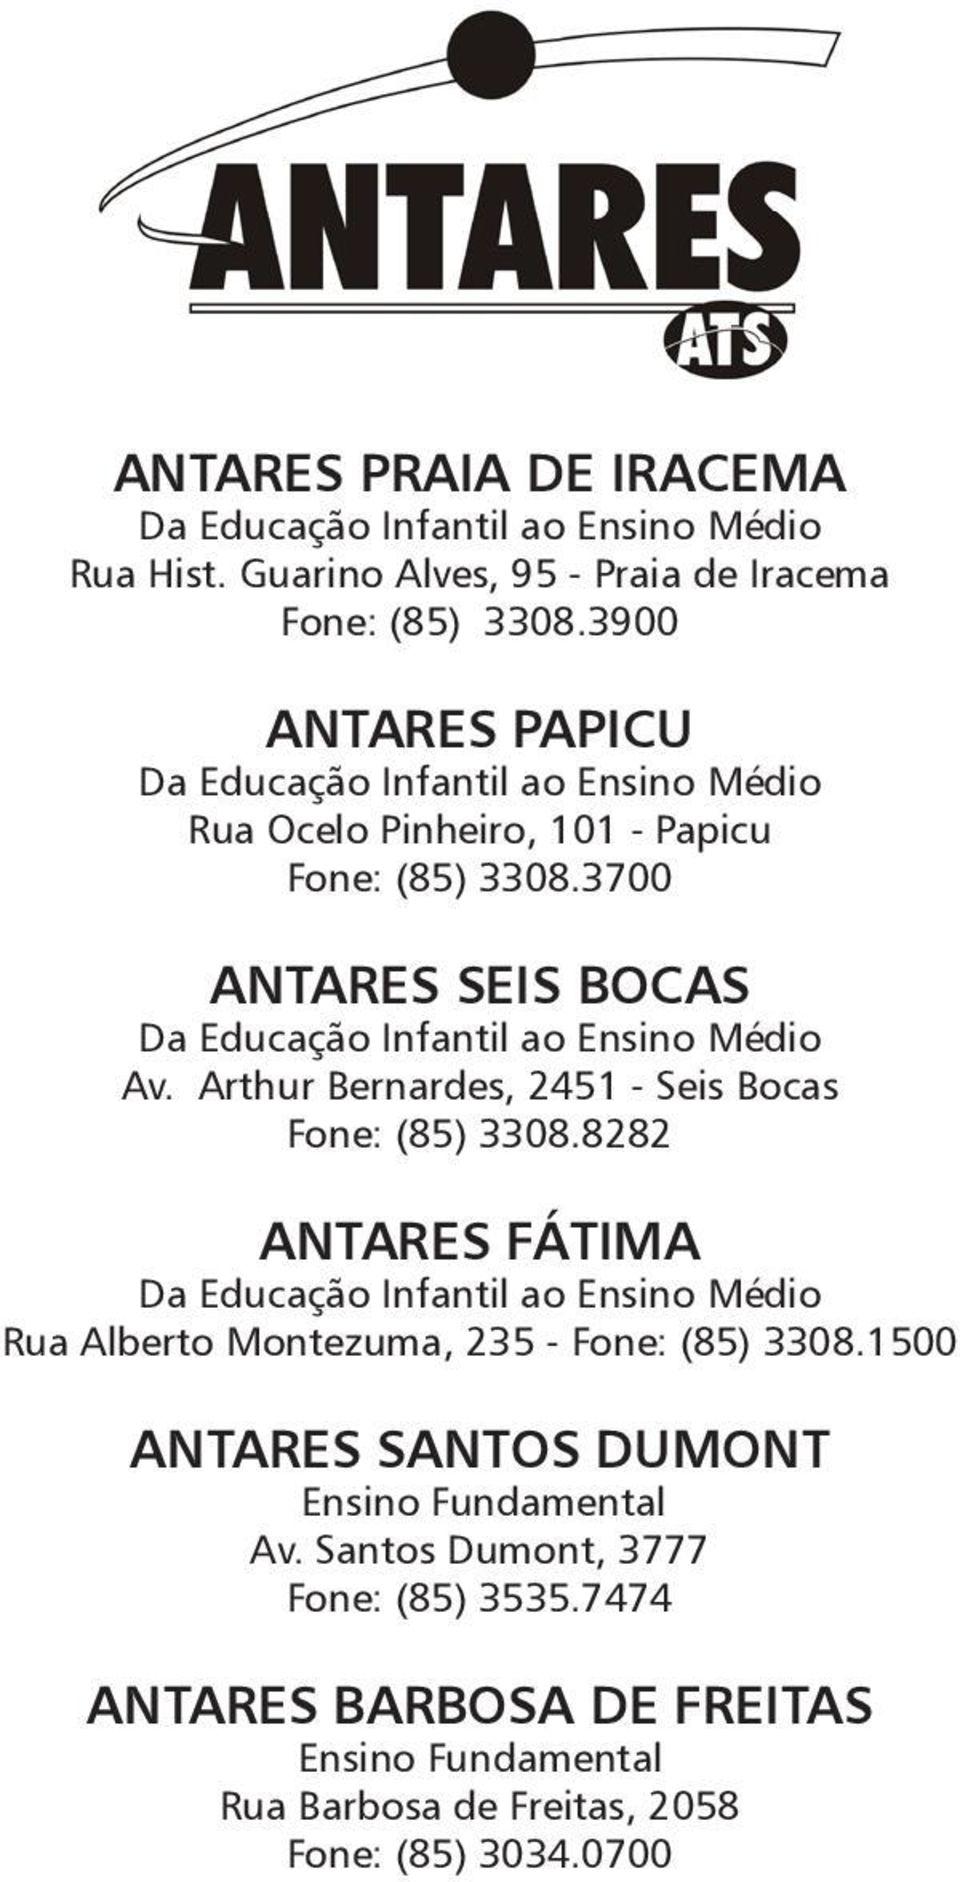 3700 ANTARES SEIS BOCAS Da Educação Infantil ao Ensino Médio Av. Arthur Bernardes, 2451 - Seis Bocas Fone: (85) 3308.